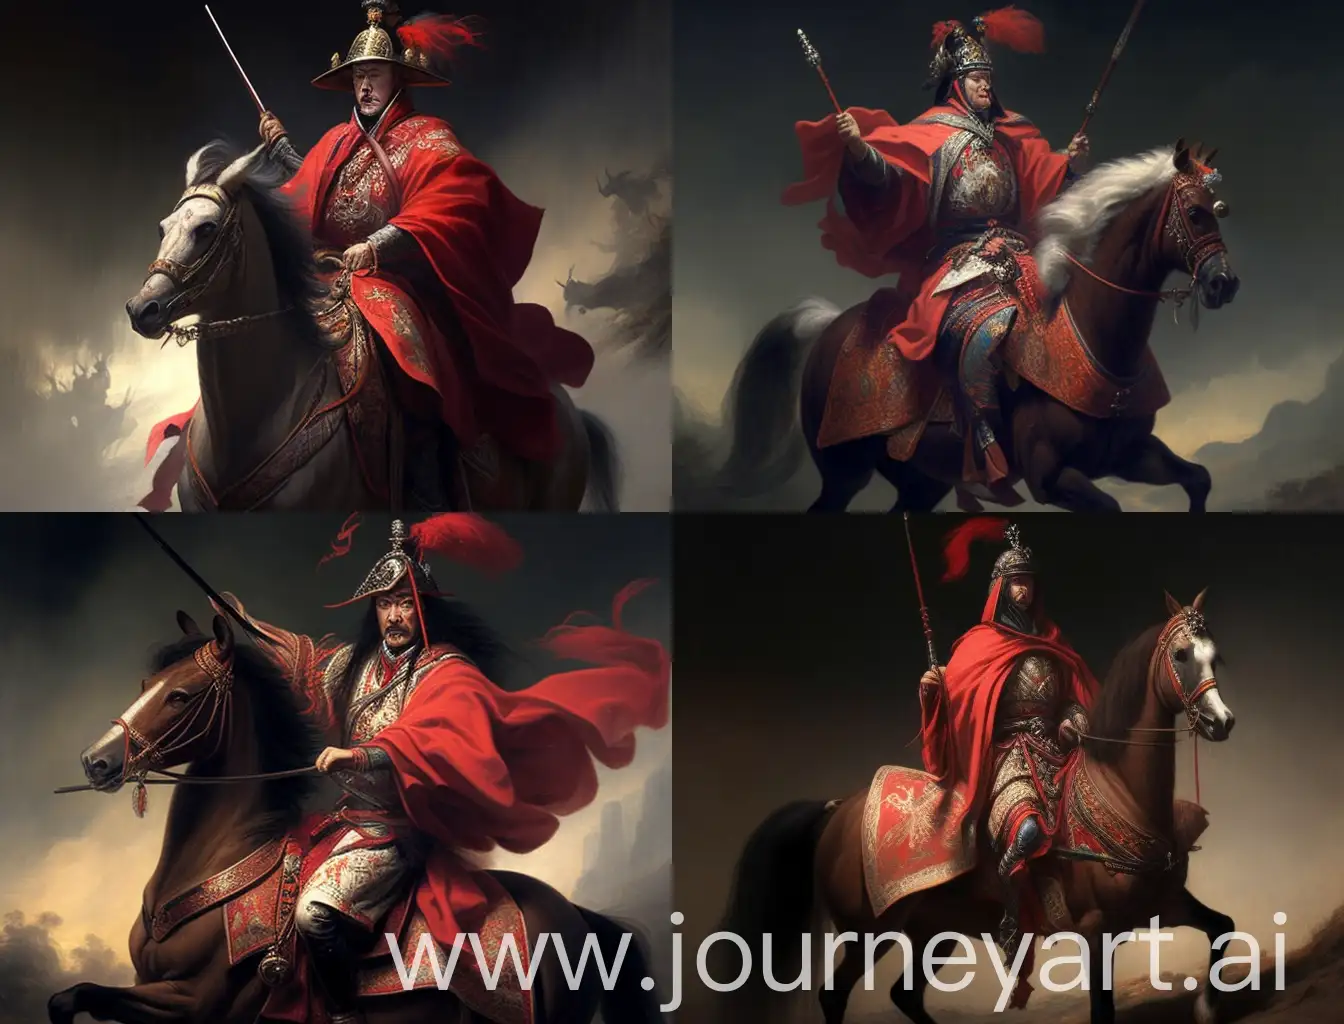 一位中国将军，身披红色战袍，骑着高头大马，腰佩宝剑，手拿银色钢枪，目视远方，威风凛凛